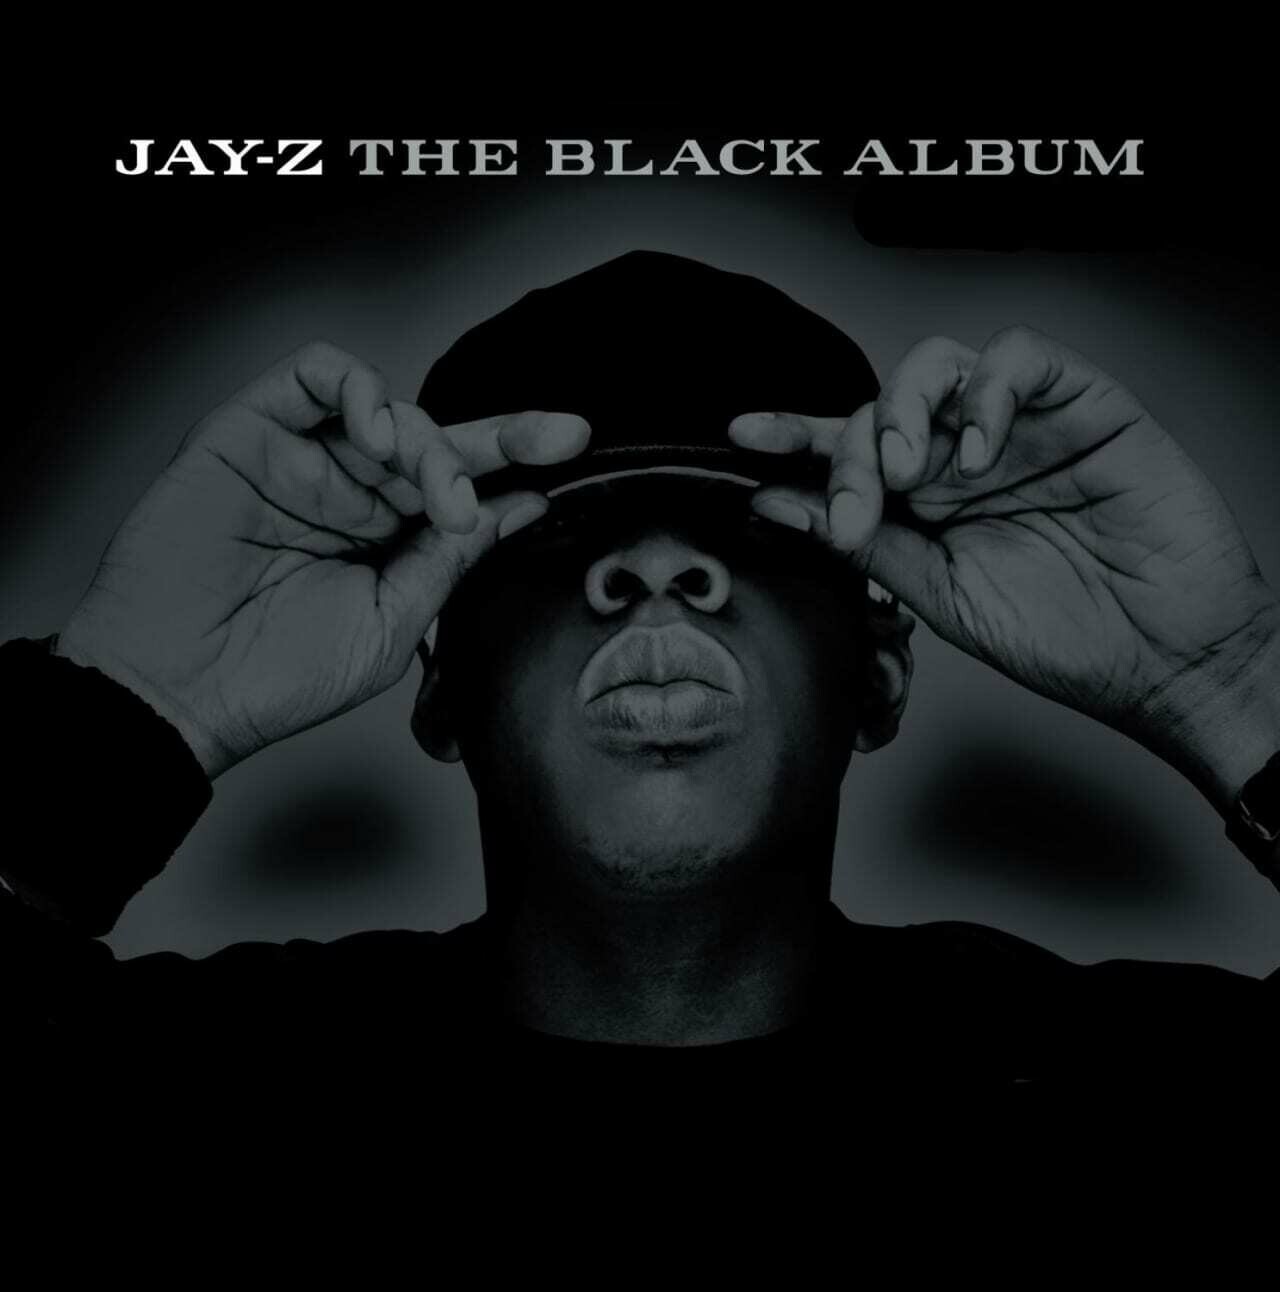 Jay-Z "The Black Album"